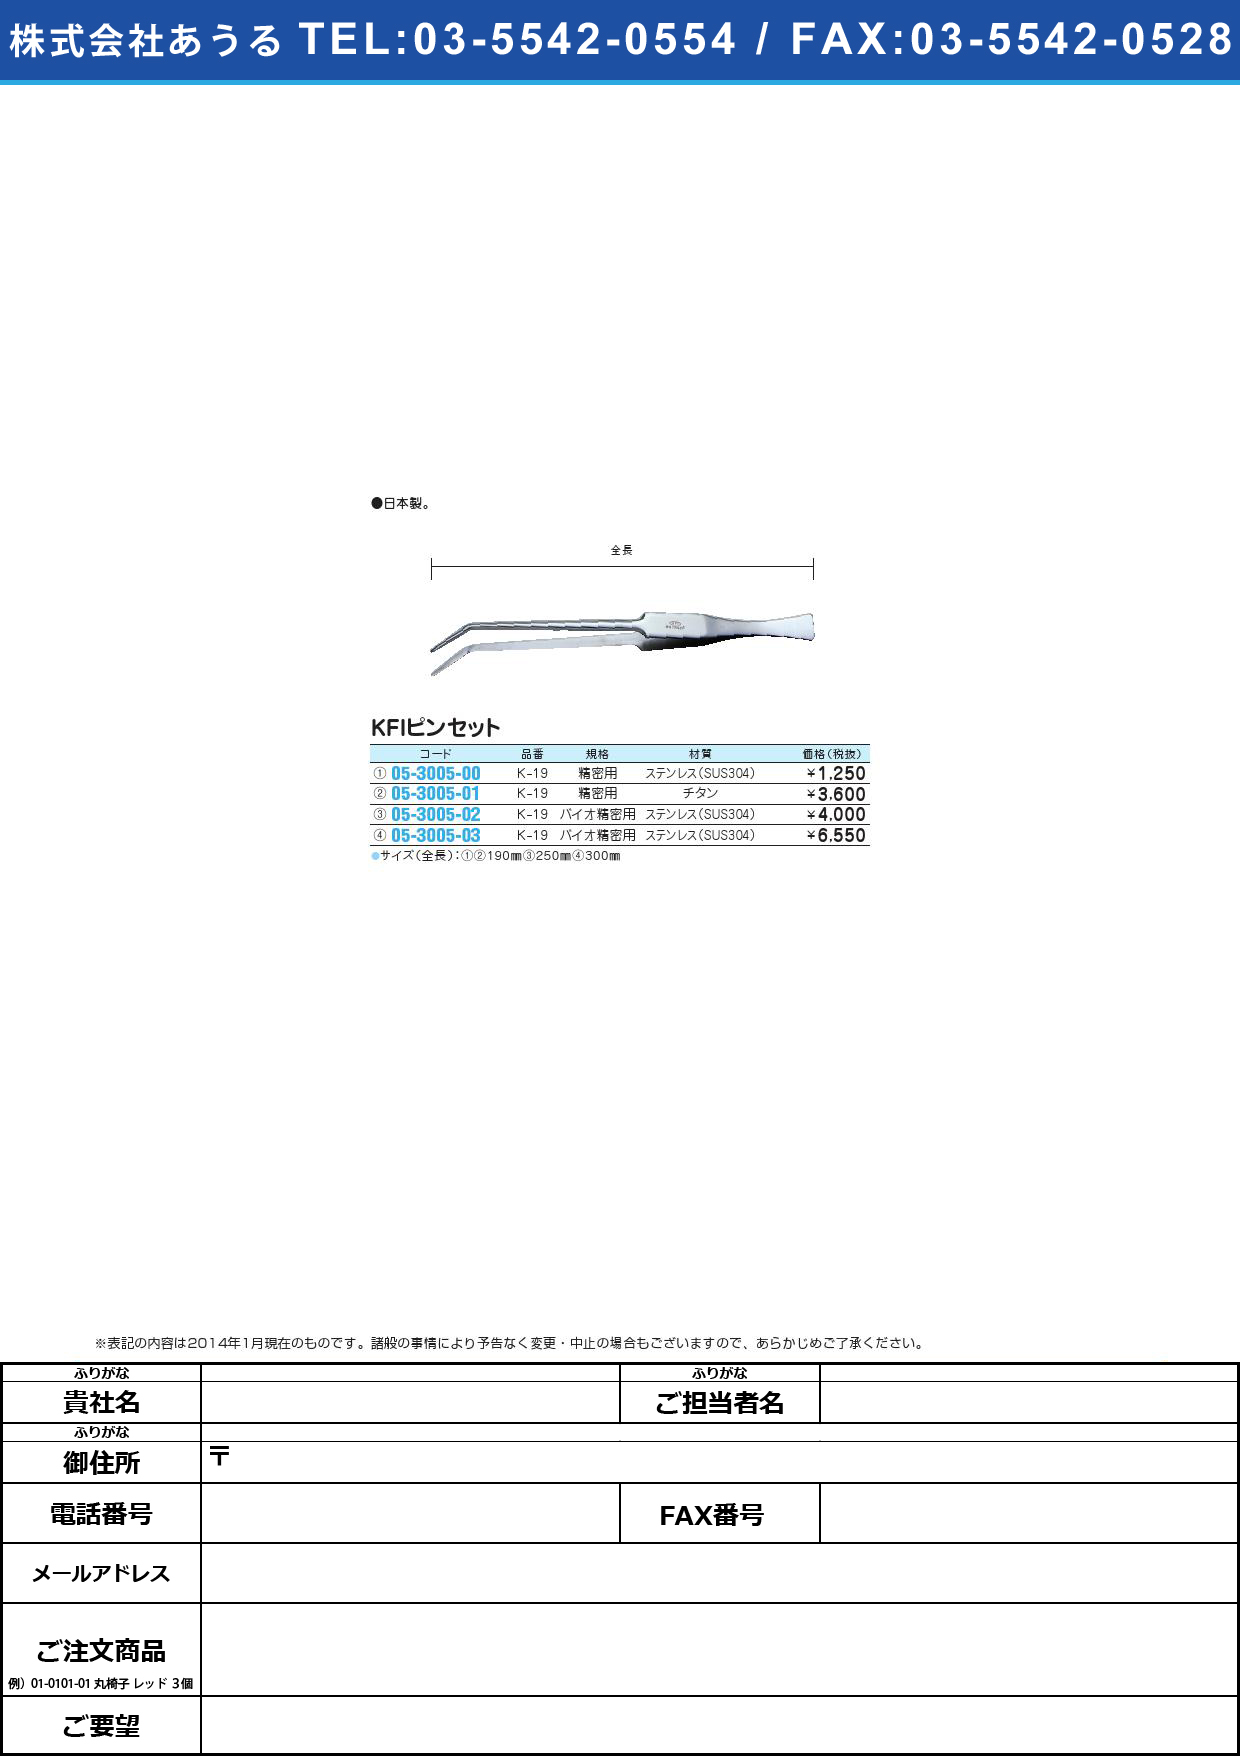 ＫＦＩピンセット バイオ精密用 ﾋﾟﾝｾｯﾄ(05-3005-02)K-19 (ｽﾃﾝﾚｽ) 250MM